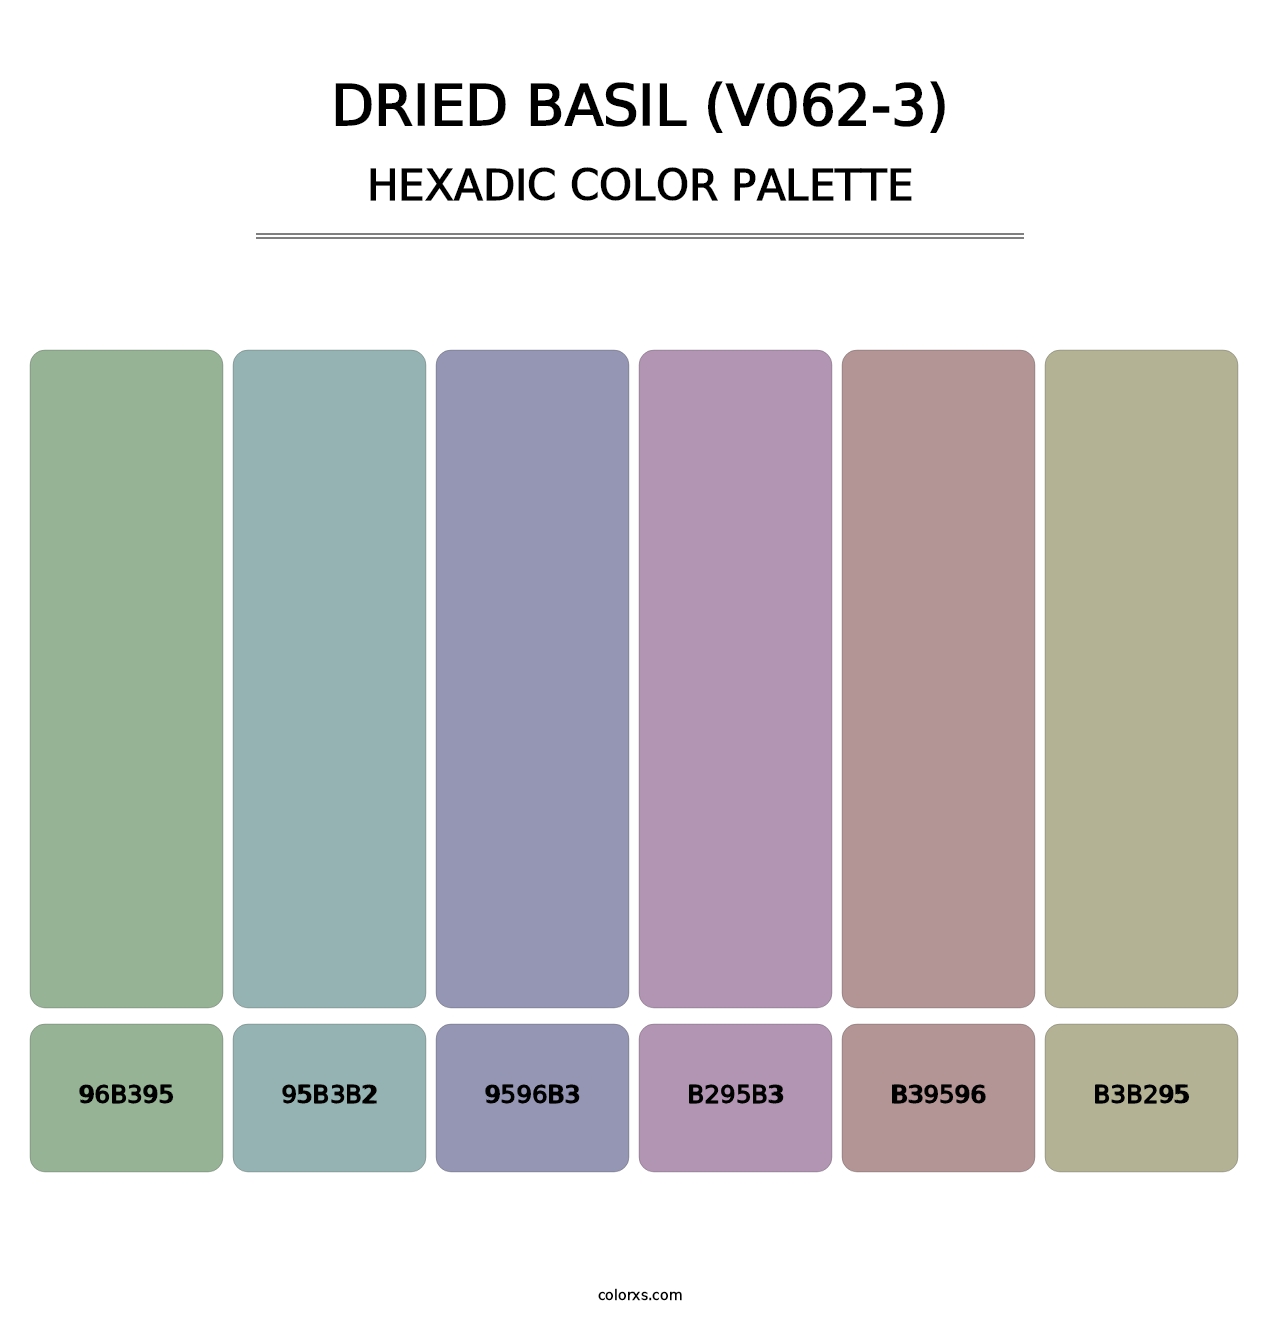 Dried Basil (V062-3) - Hexadic Color Palette